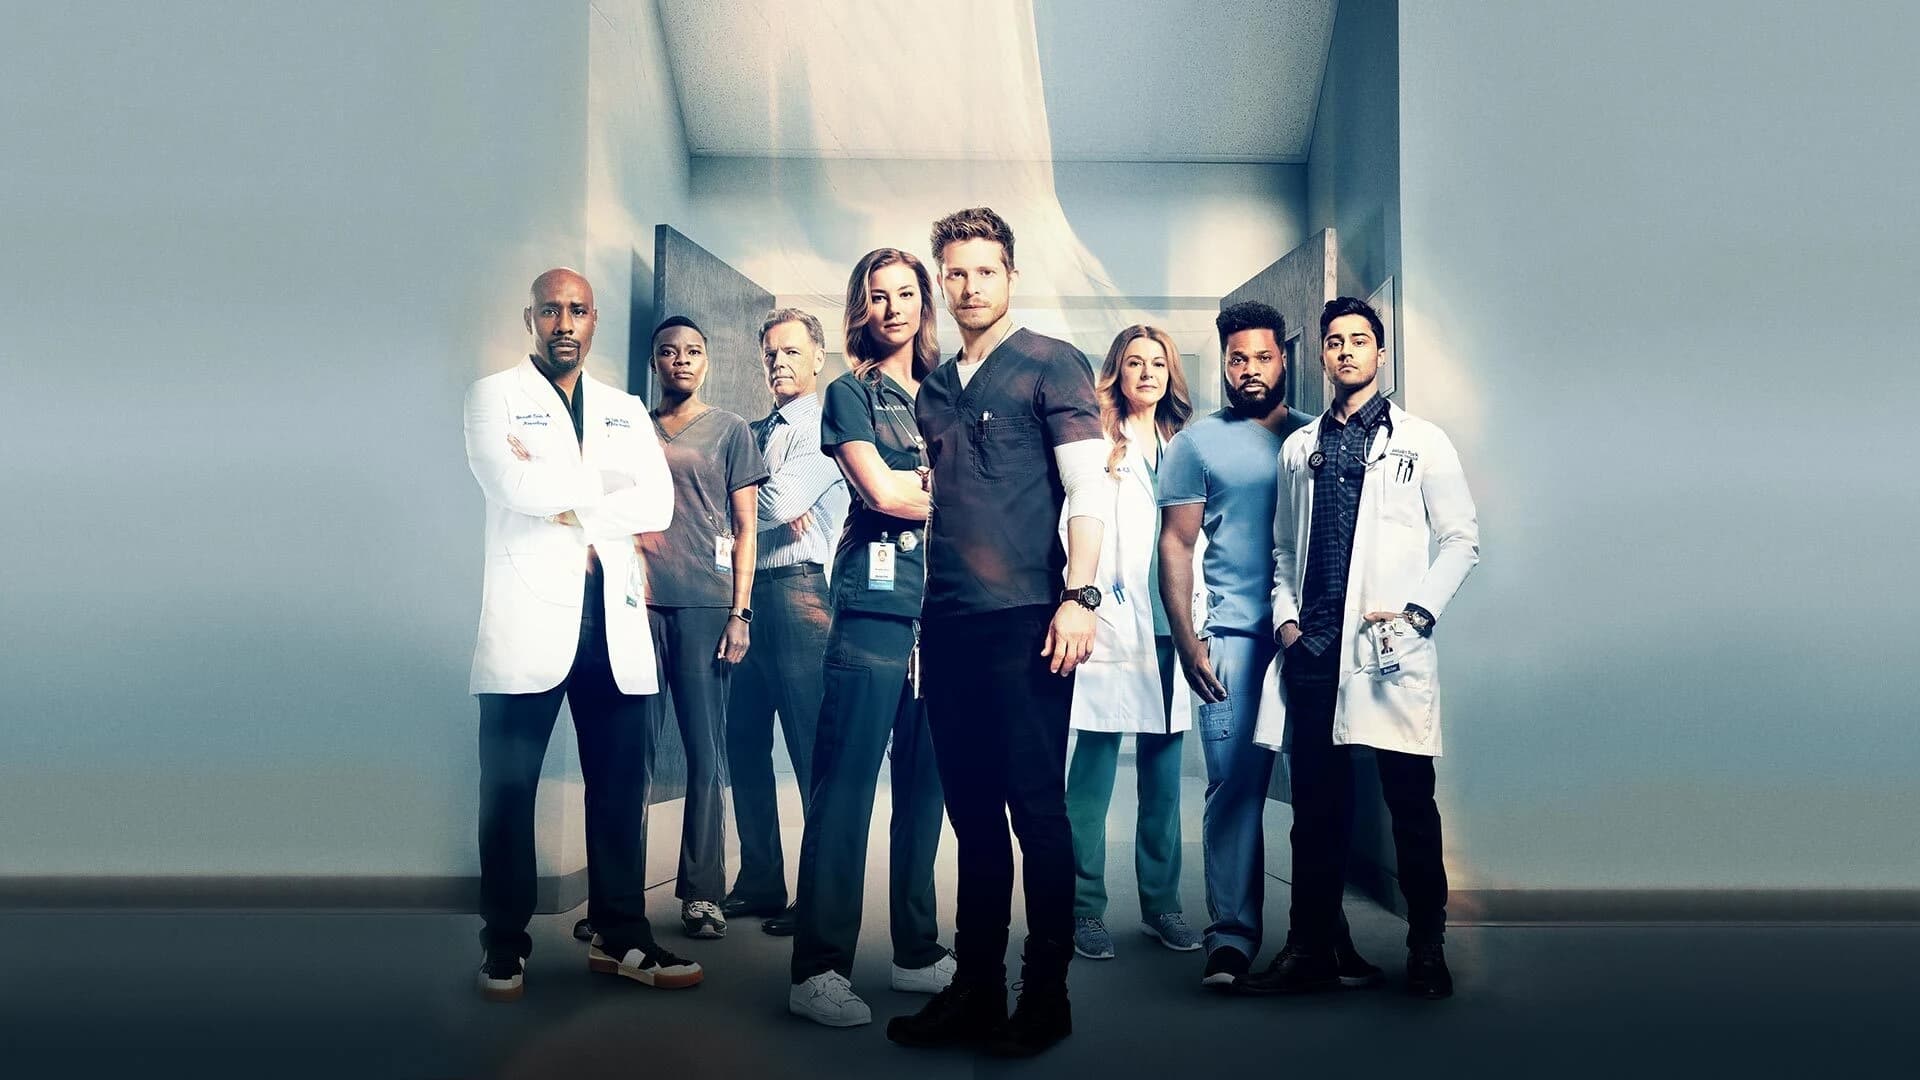 Atlanta Medical - Season 2 Episode 18